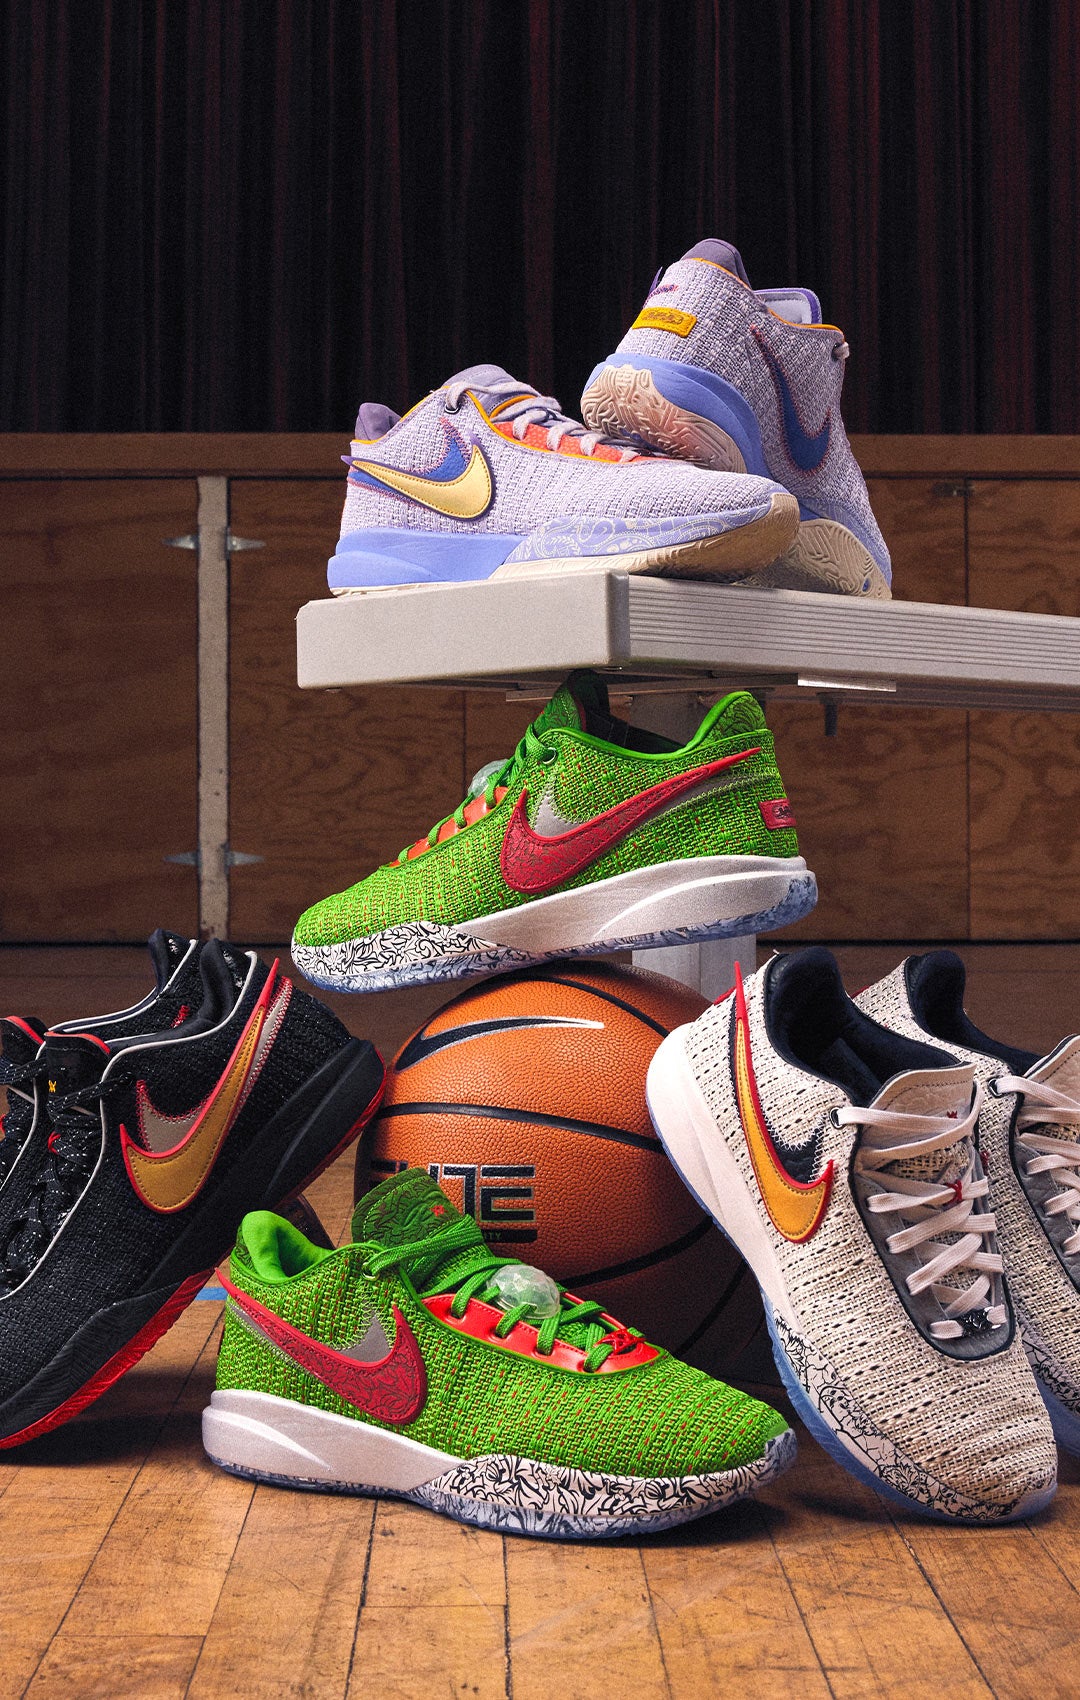 el primero Optimista fuente Nike Shoes, Apparel, and Accessories | Foot Locker